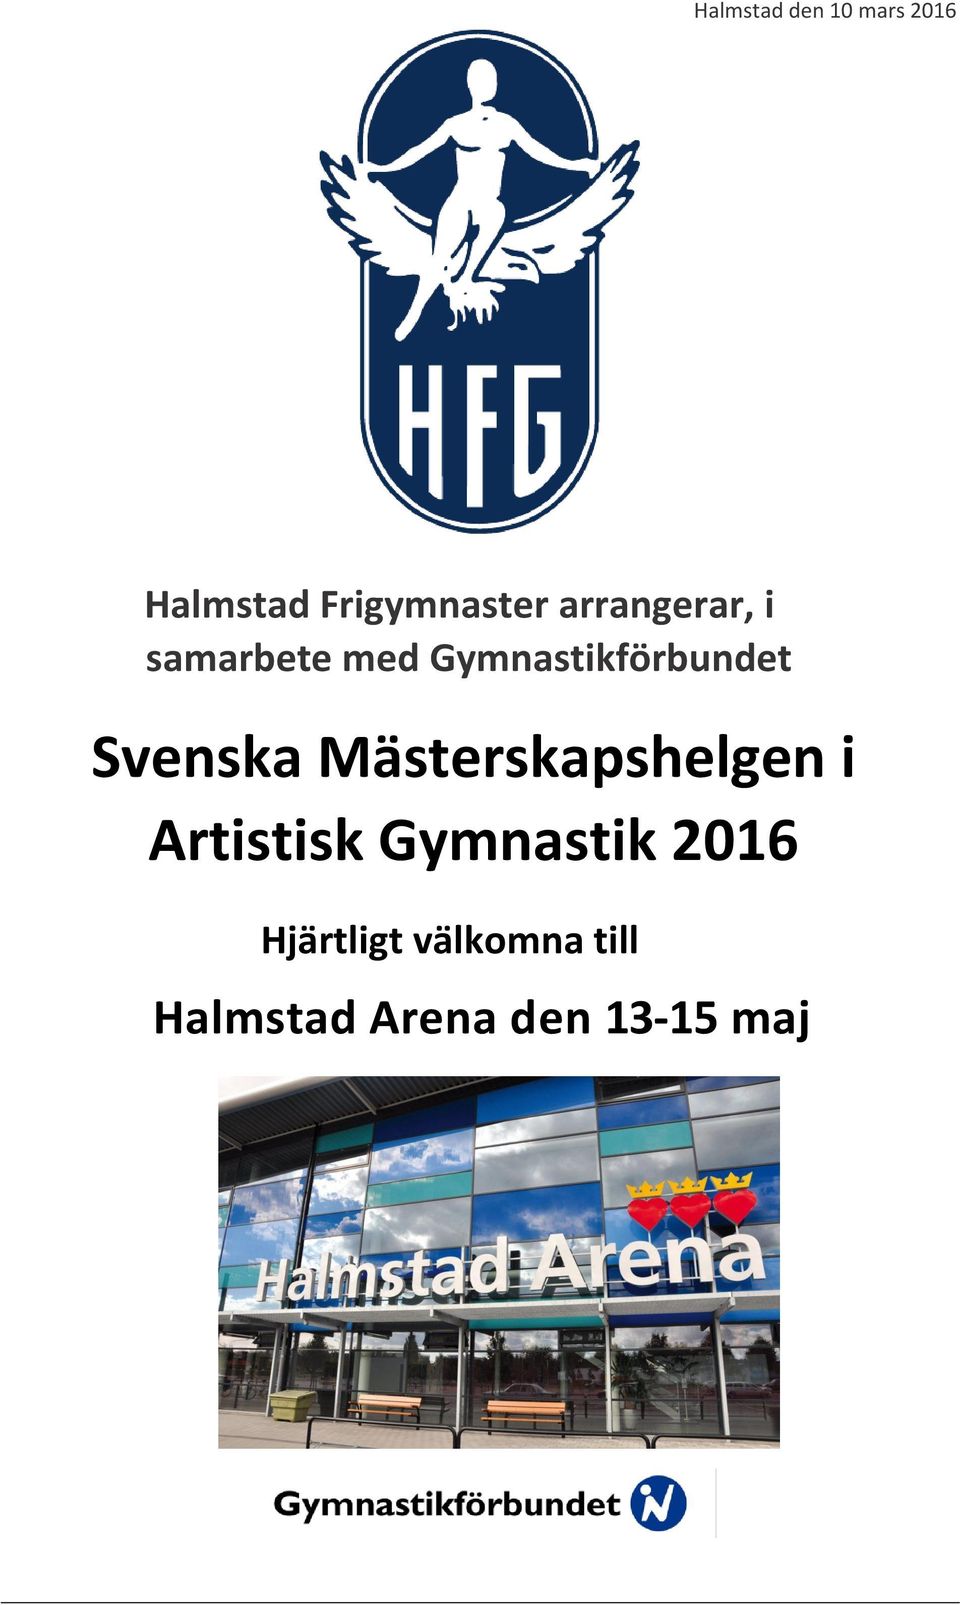 Svenska Mästerskapshelgen i Artistisk Gymnastik